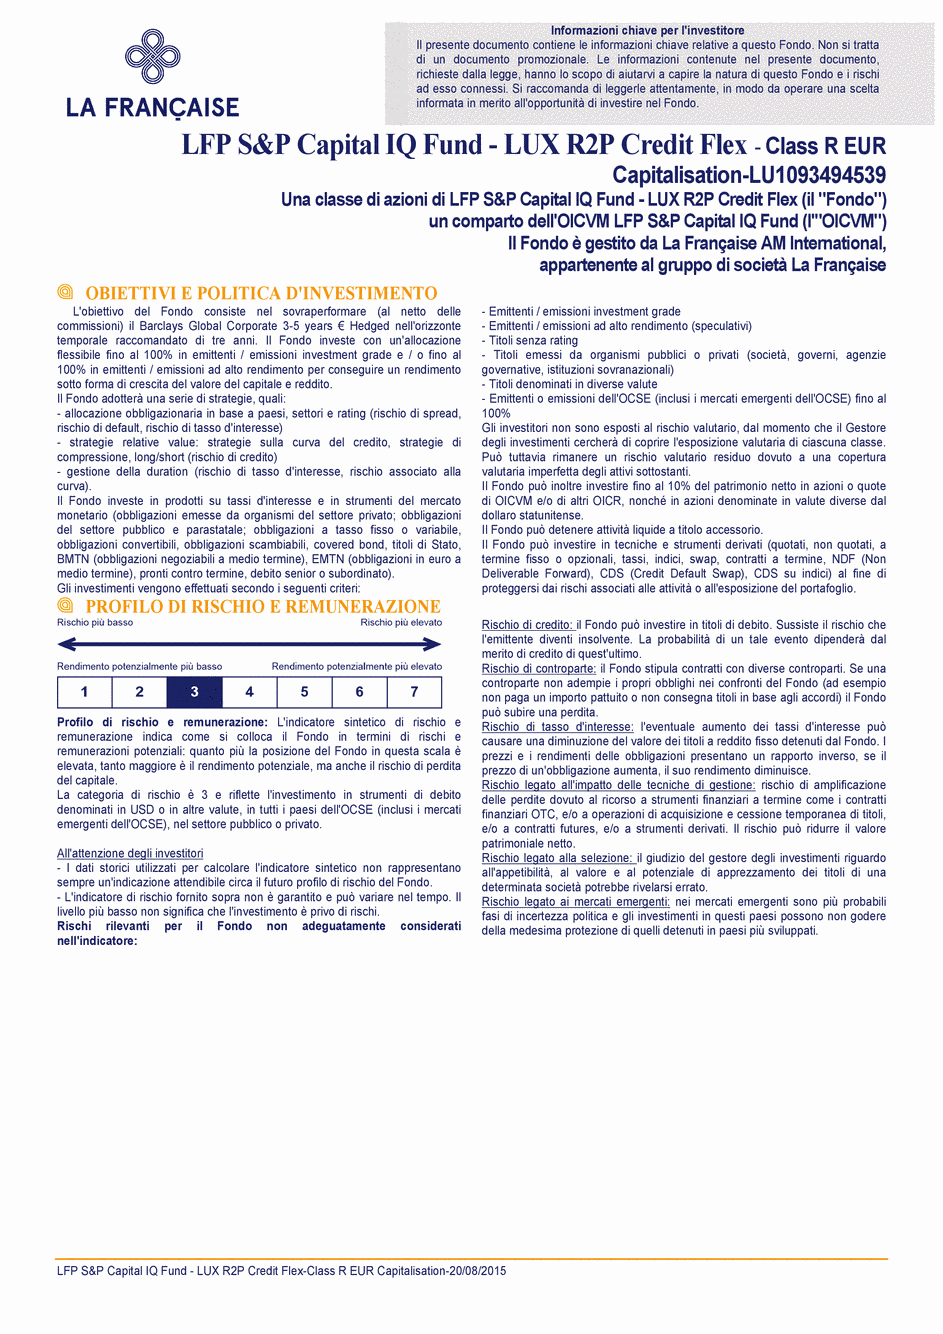 DICI LFP S&P Capital IQ Fund - LUX R2P Credit Flex R CAP EUR - 20/08/2015 - Italien